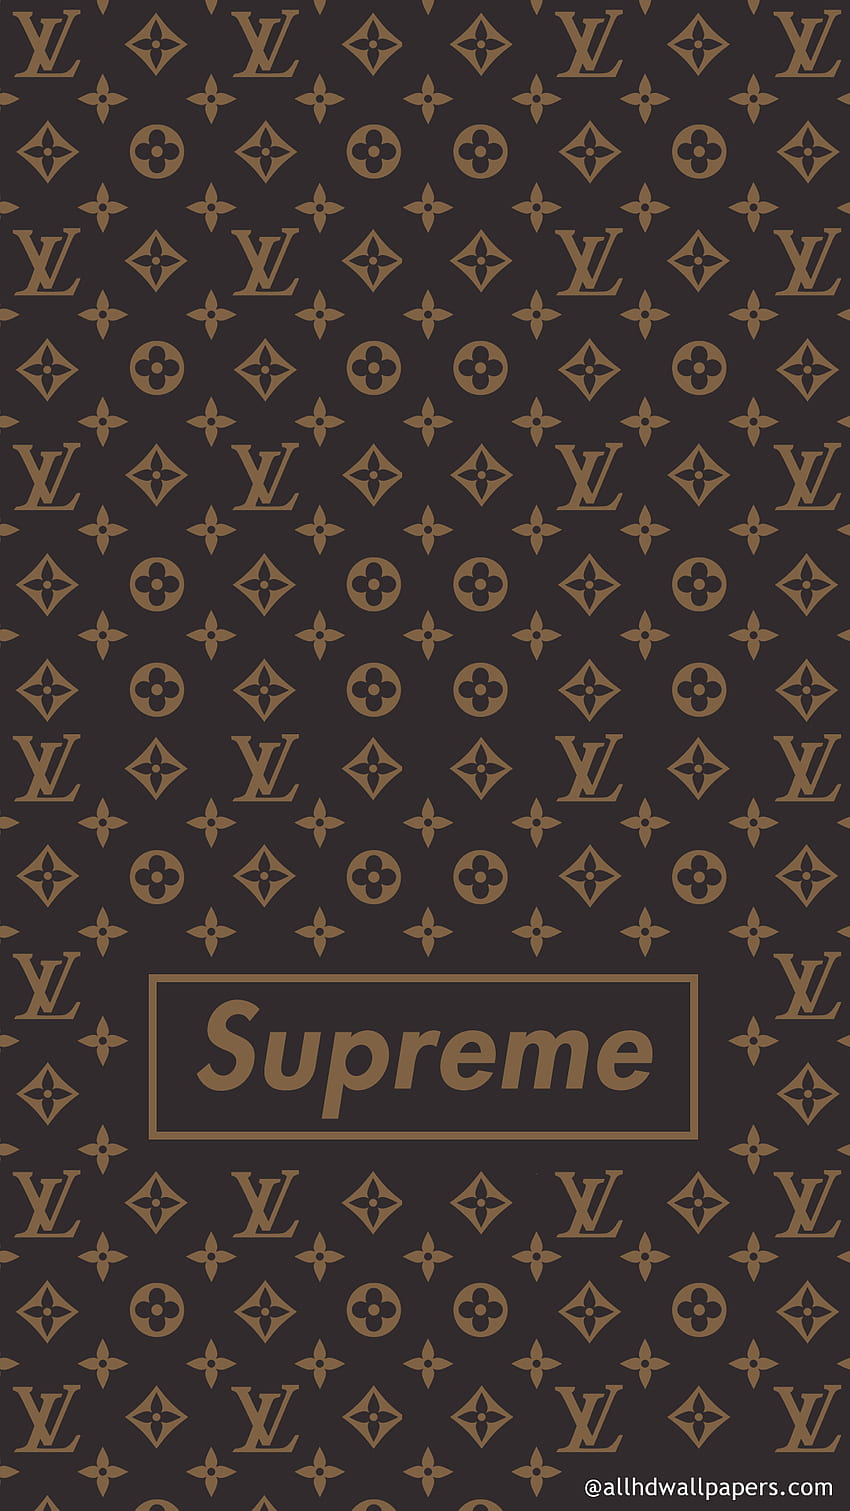 Supreme in - All. Supreme iphone , Supreme , Gucci iphone, Cool